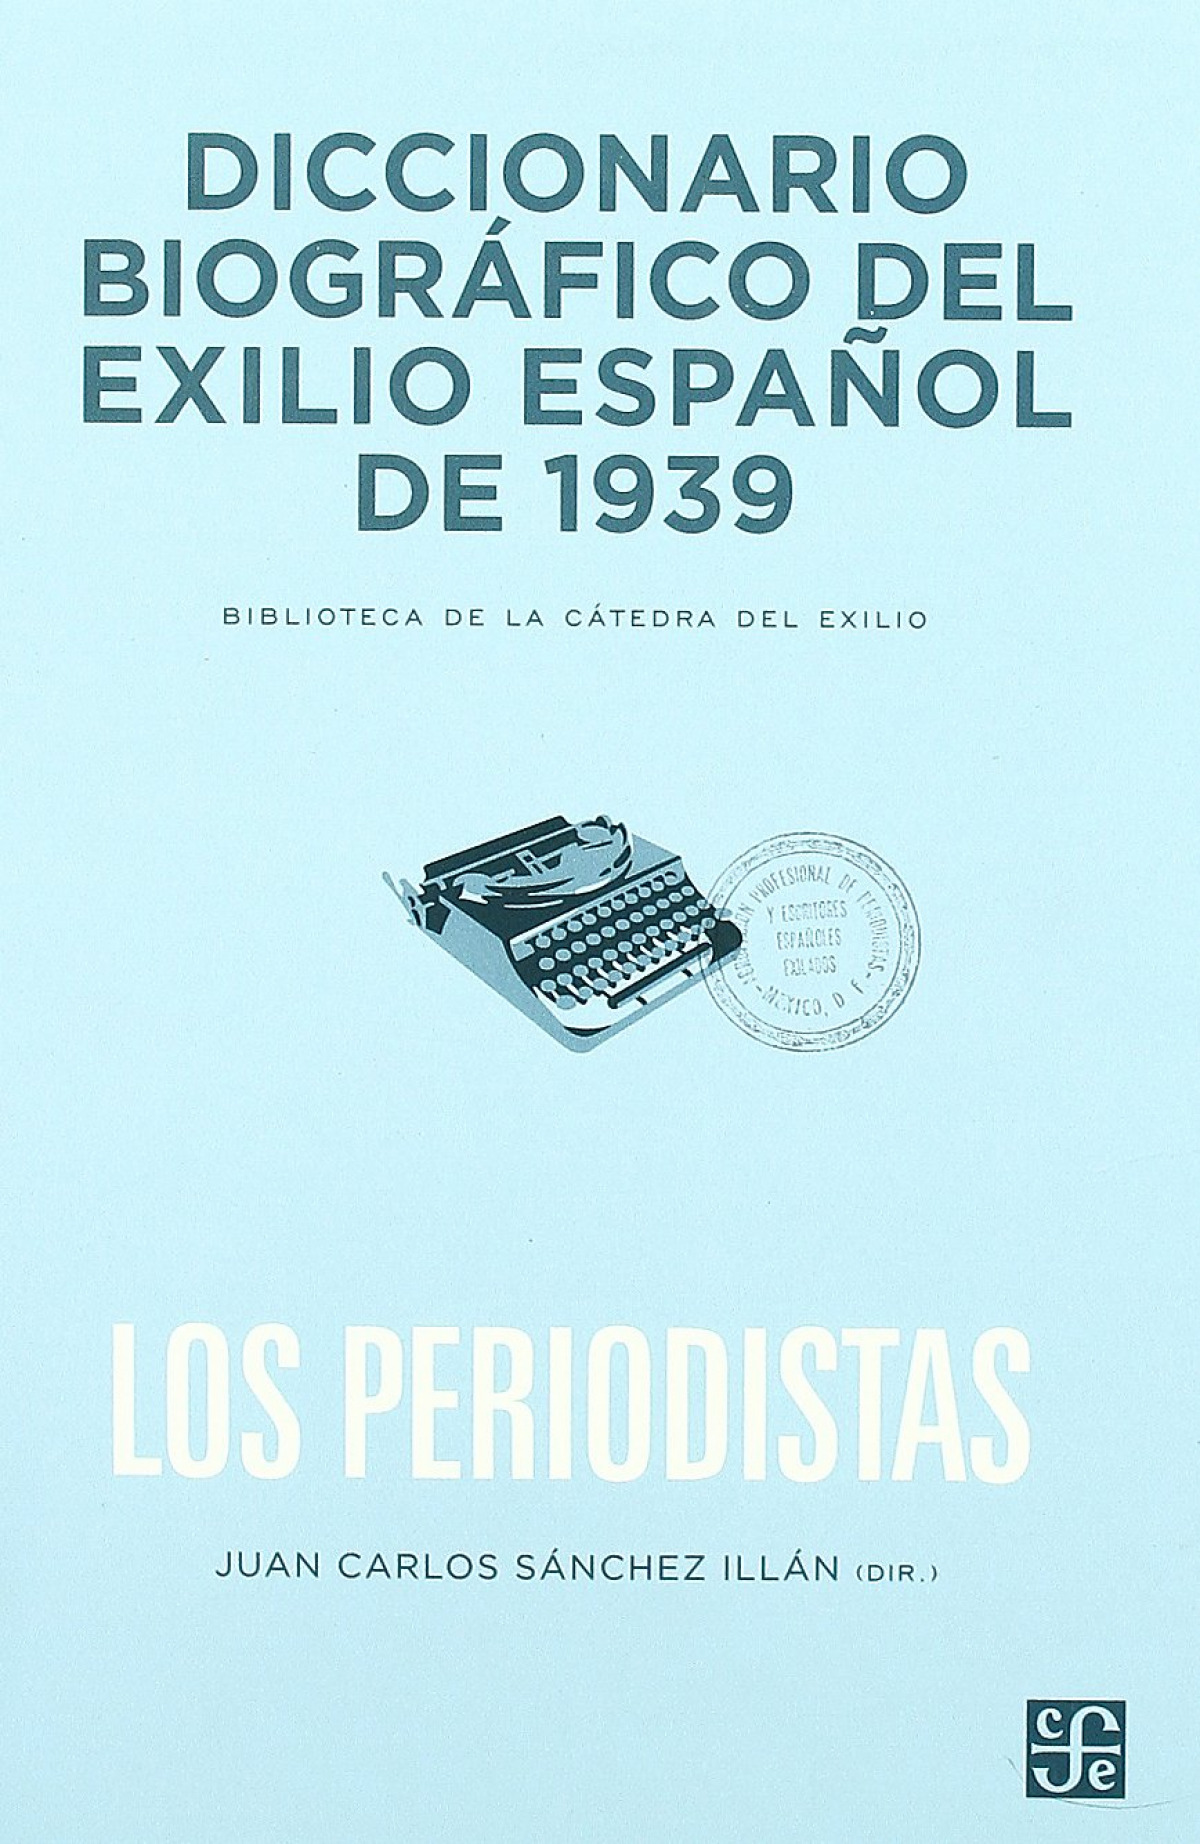 Diccionario biográfico del exilio español de 1939 : Los periodistas - Sanchez Illan, Juan Carlos